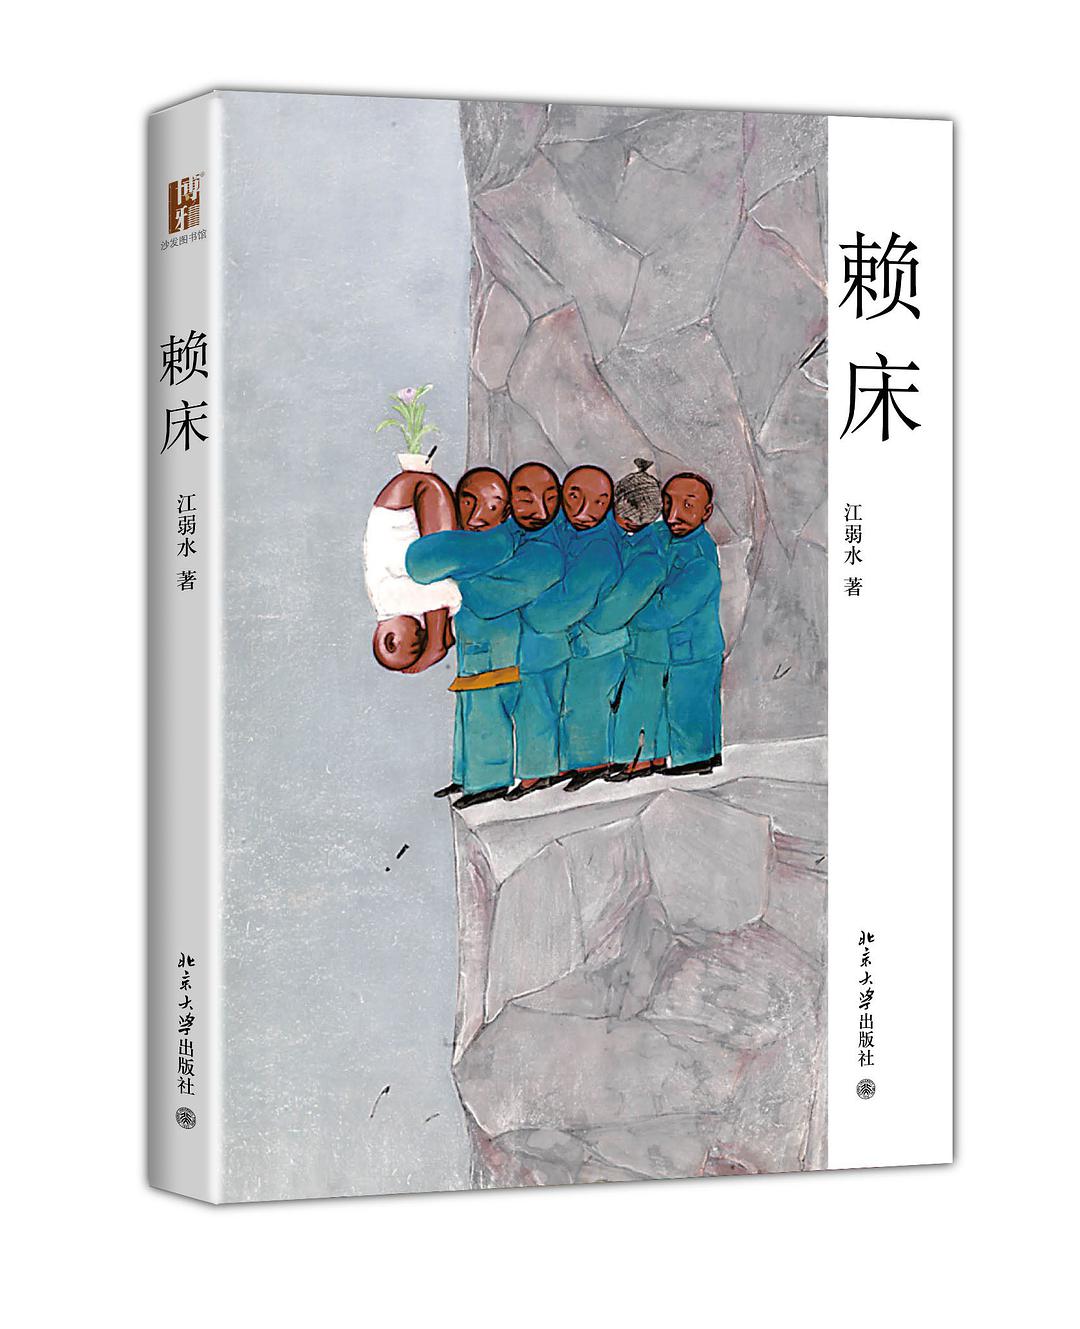 賴床(江弱水著，北京大學出版社出版圖書)